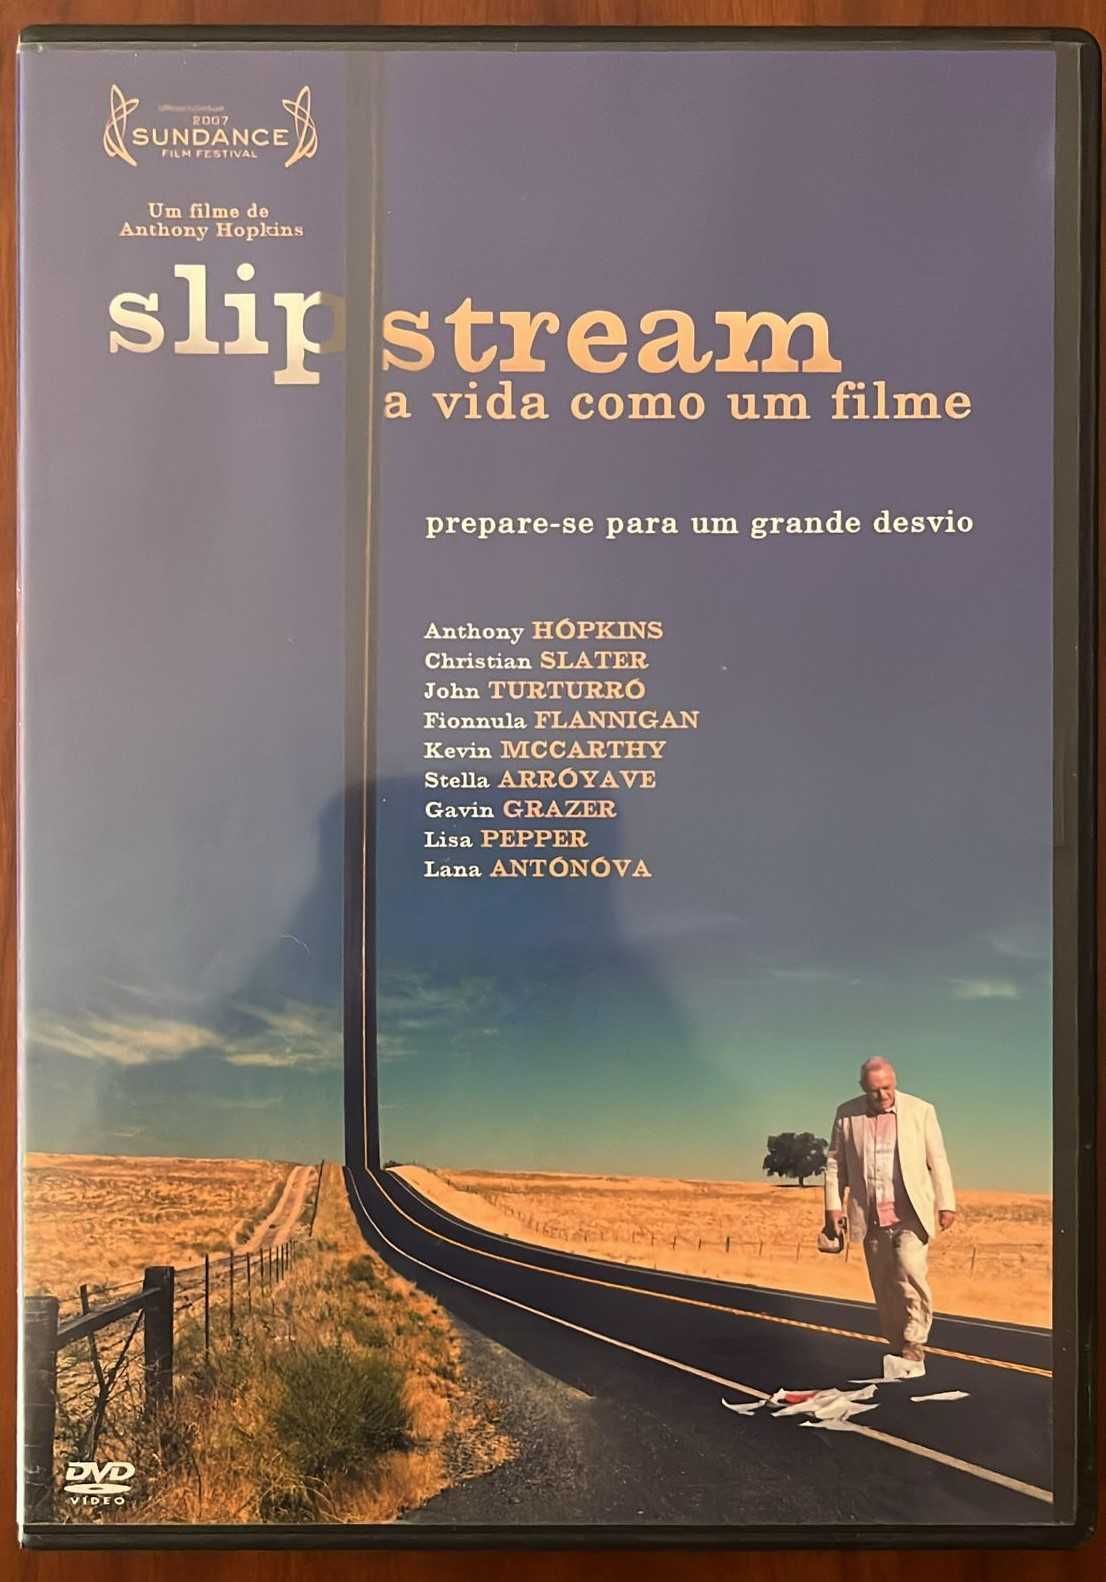 DVD "Slipstream - A vida como um filme" de Anthony Hopkins